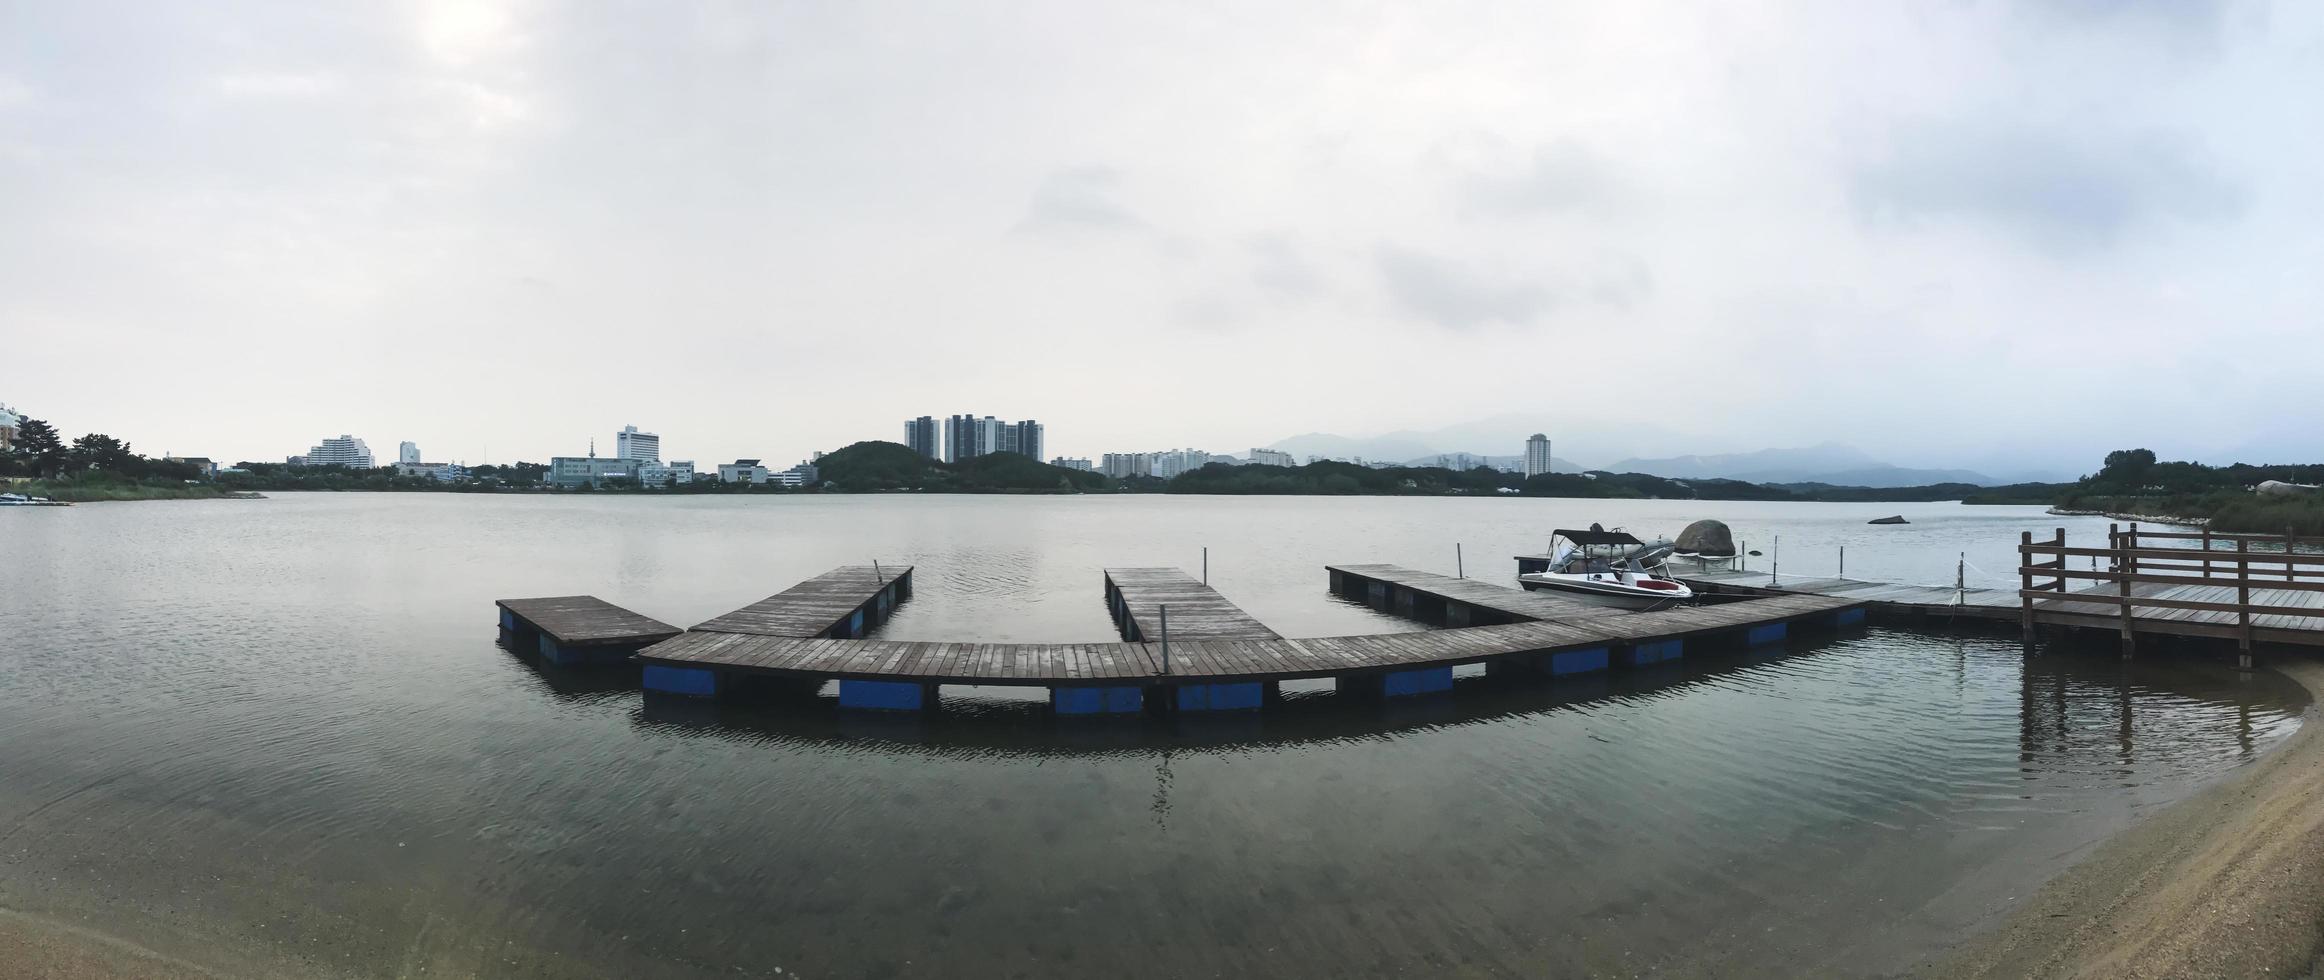 Panorama. der kleine pier am see von sokcho stadt. Südkorea foto